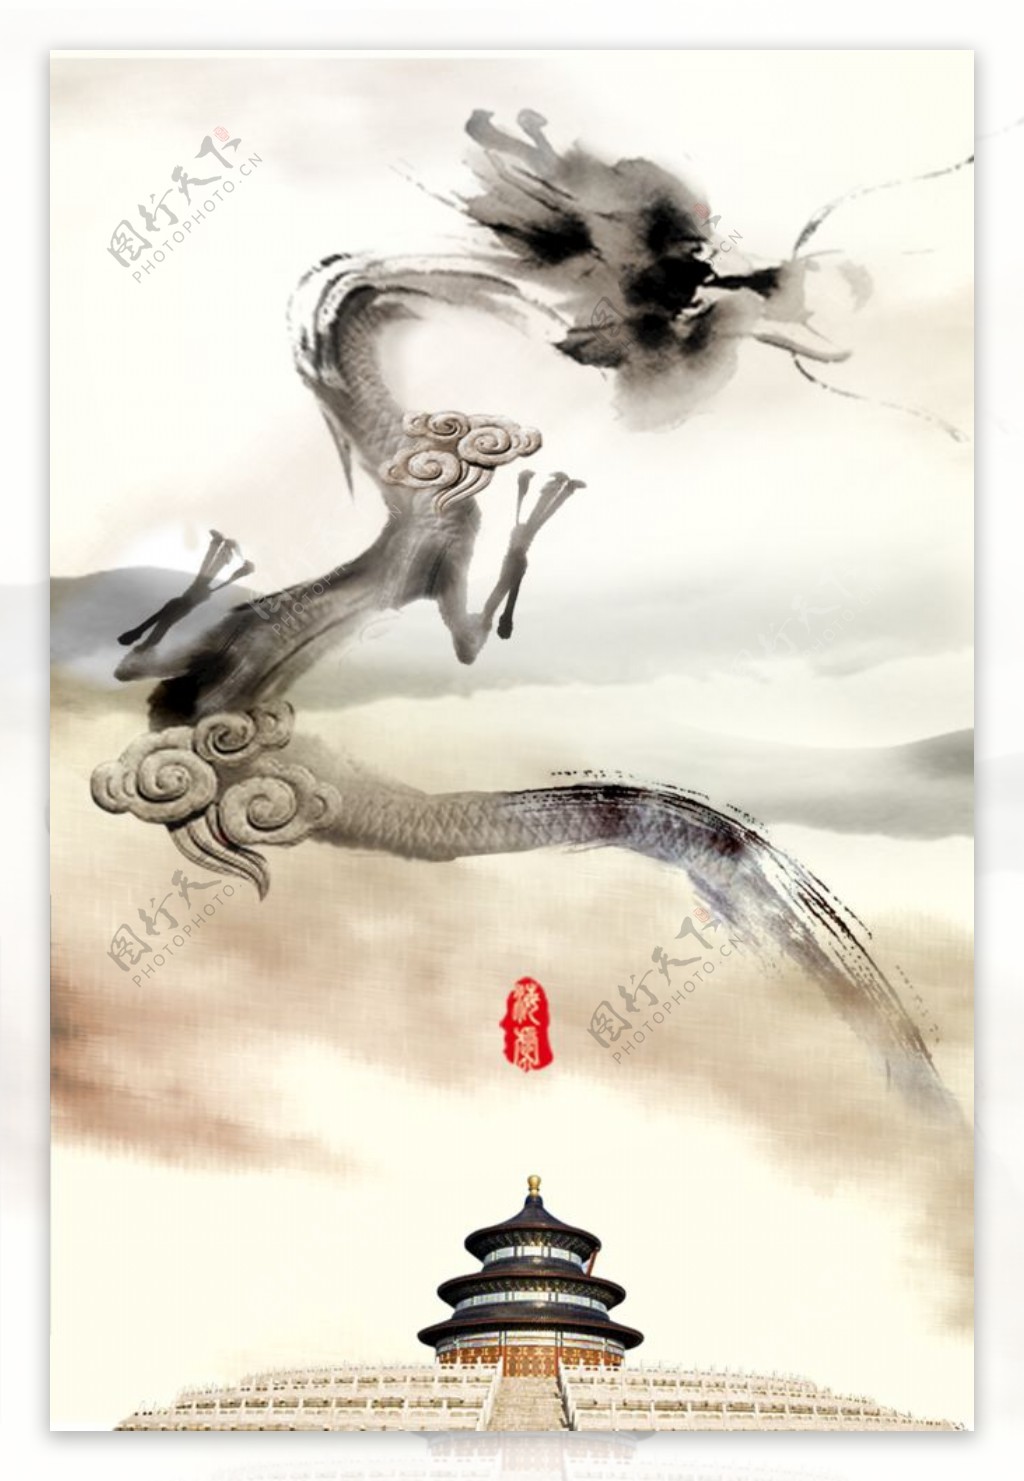 中国风格龙天坛创意海报设计